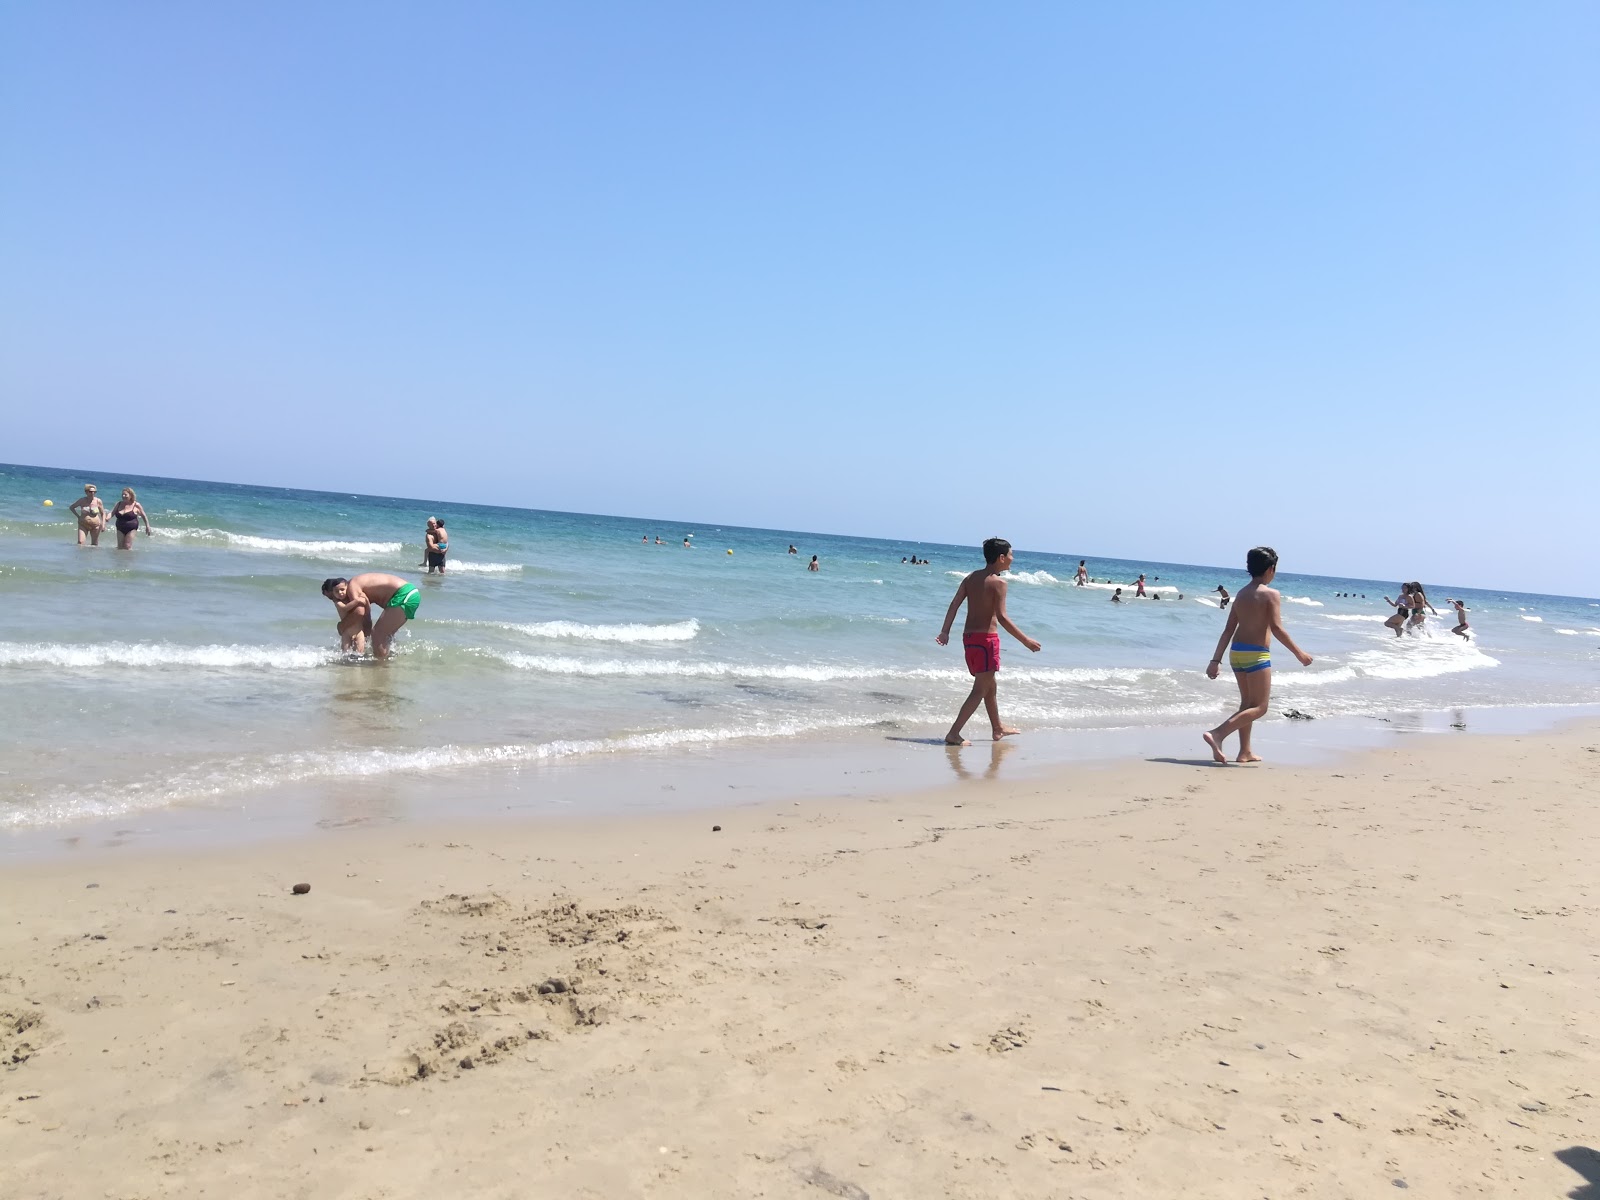 Casalabate beach'in fotoğrafı parlak kum yüzey ile